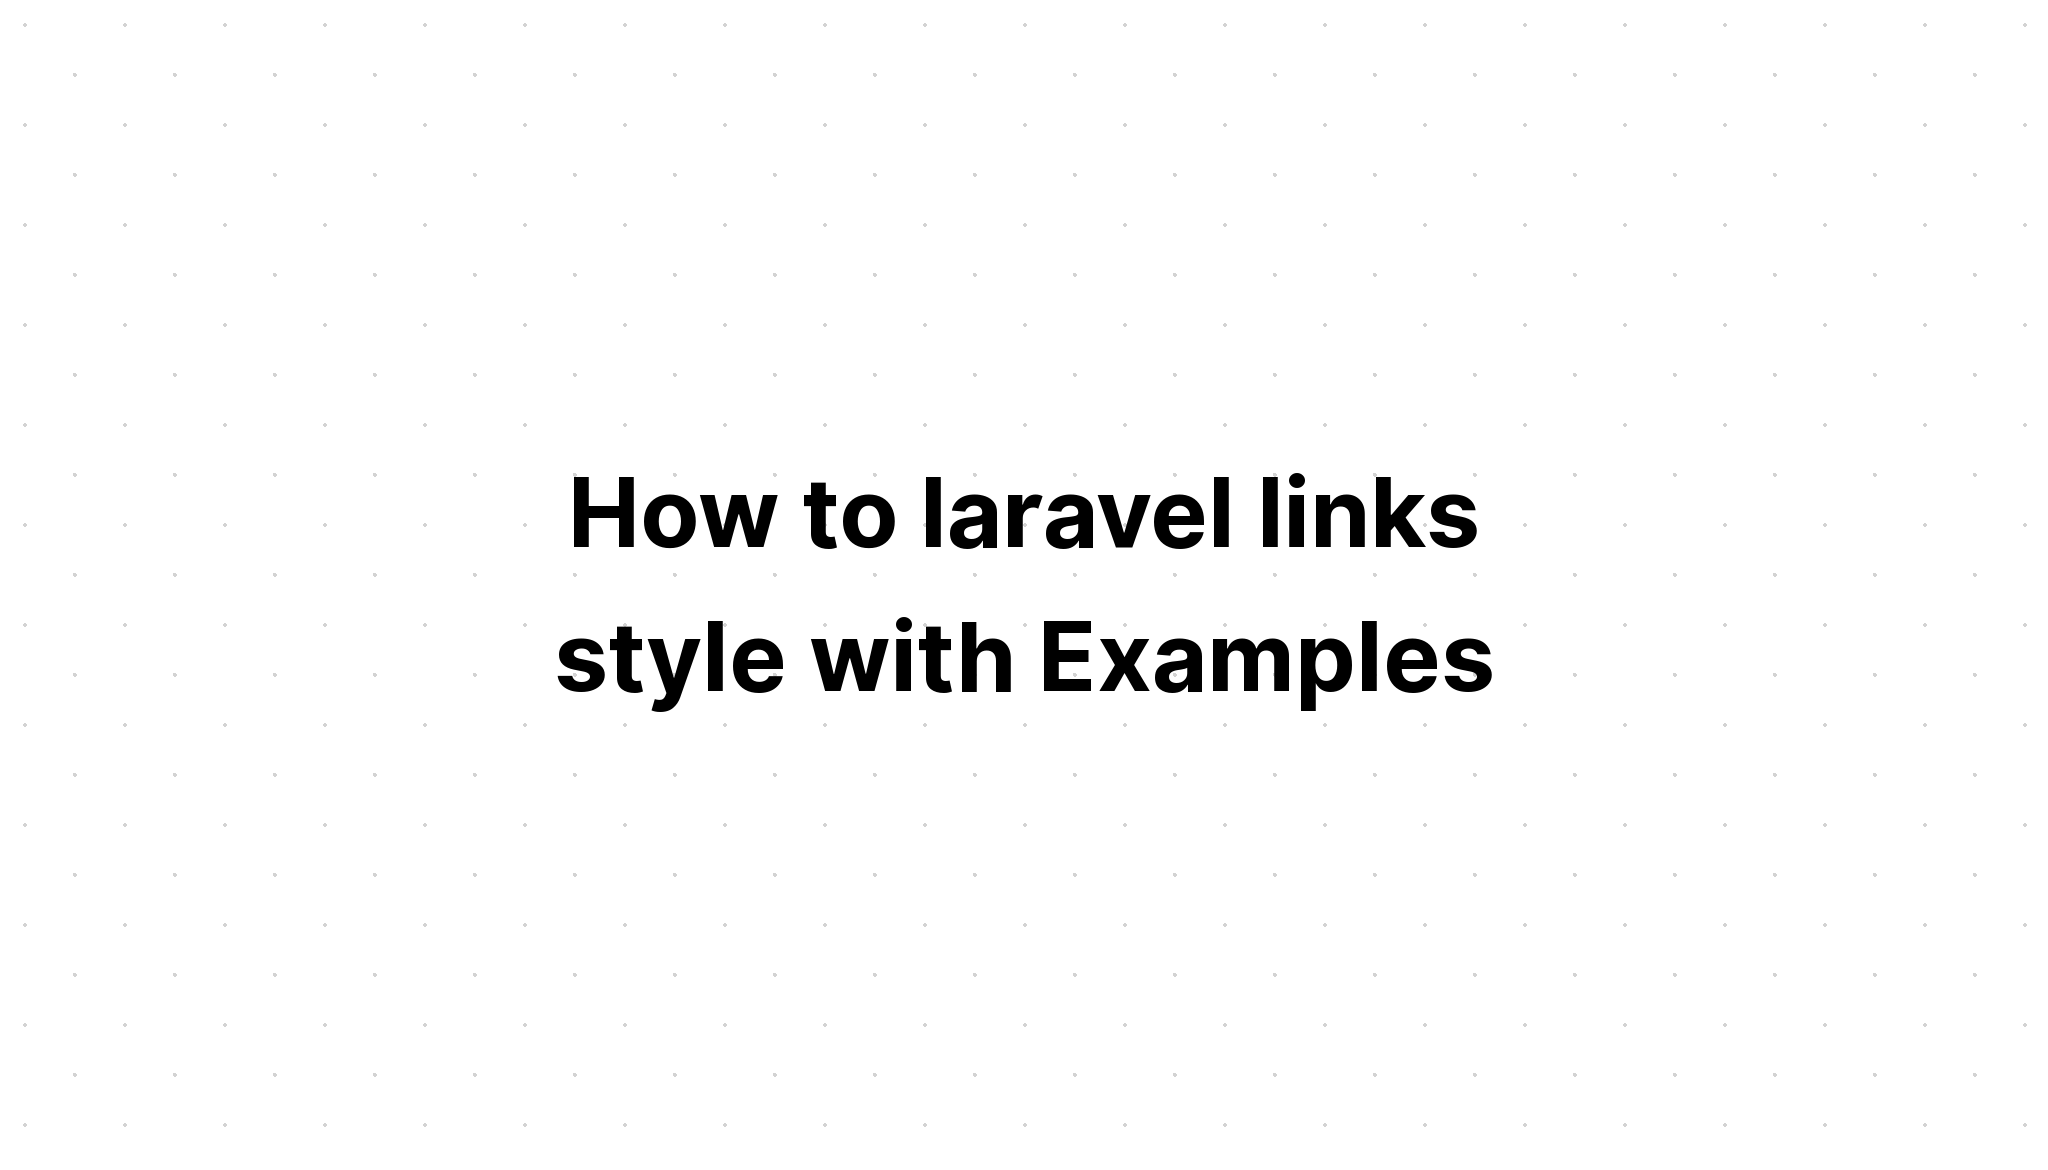 Cách tạo kiểu liên kết laravel với các ví dụ